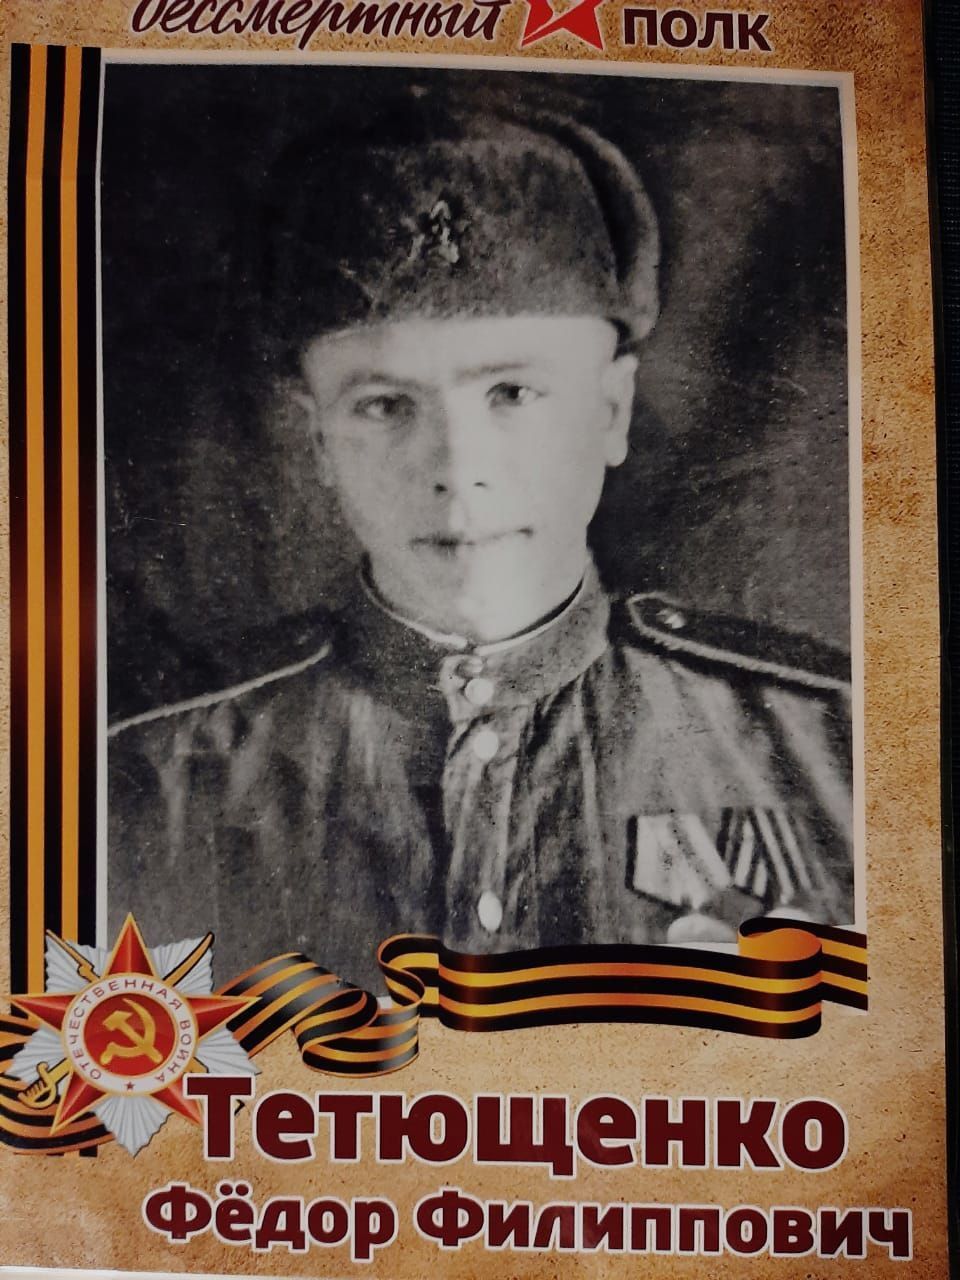 Фотография моего прадеда героя Великой Отечественной войны